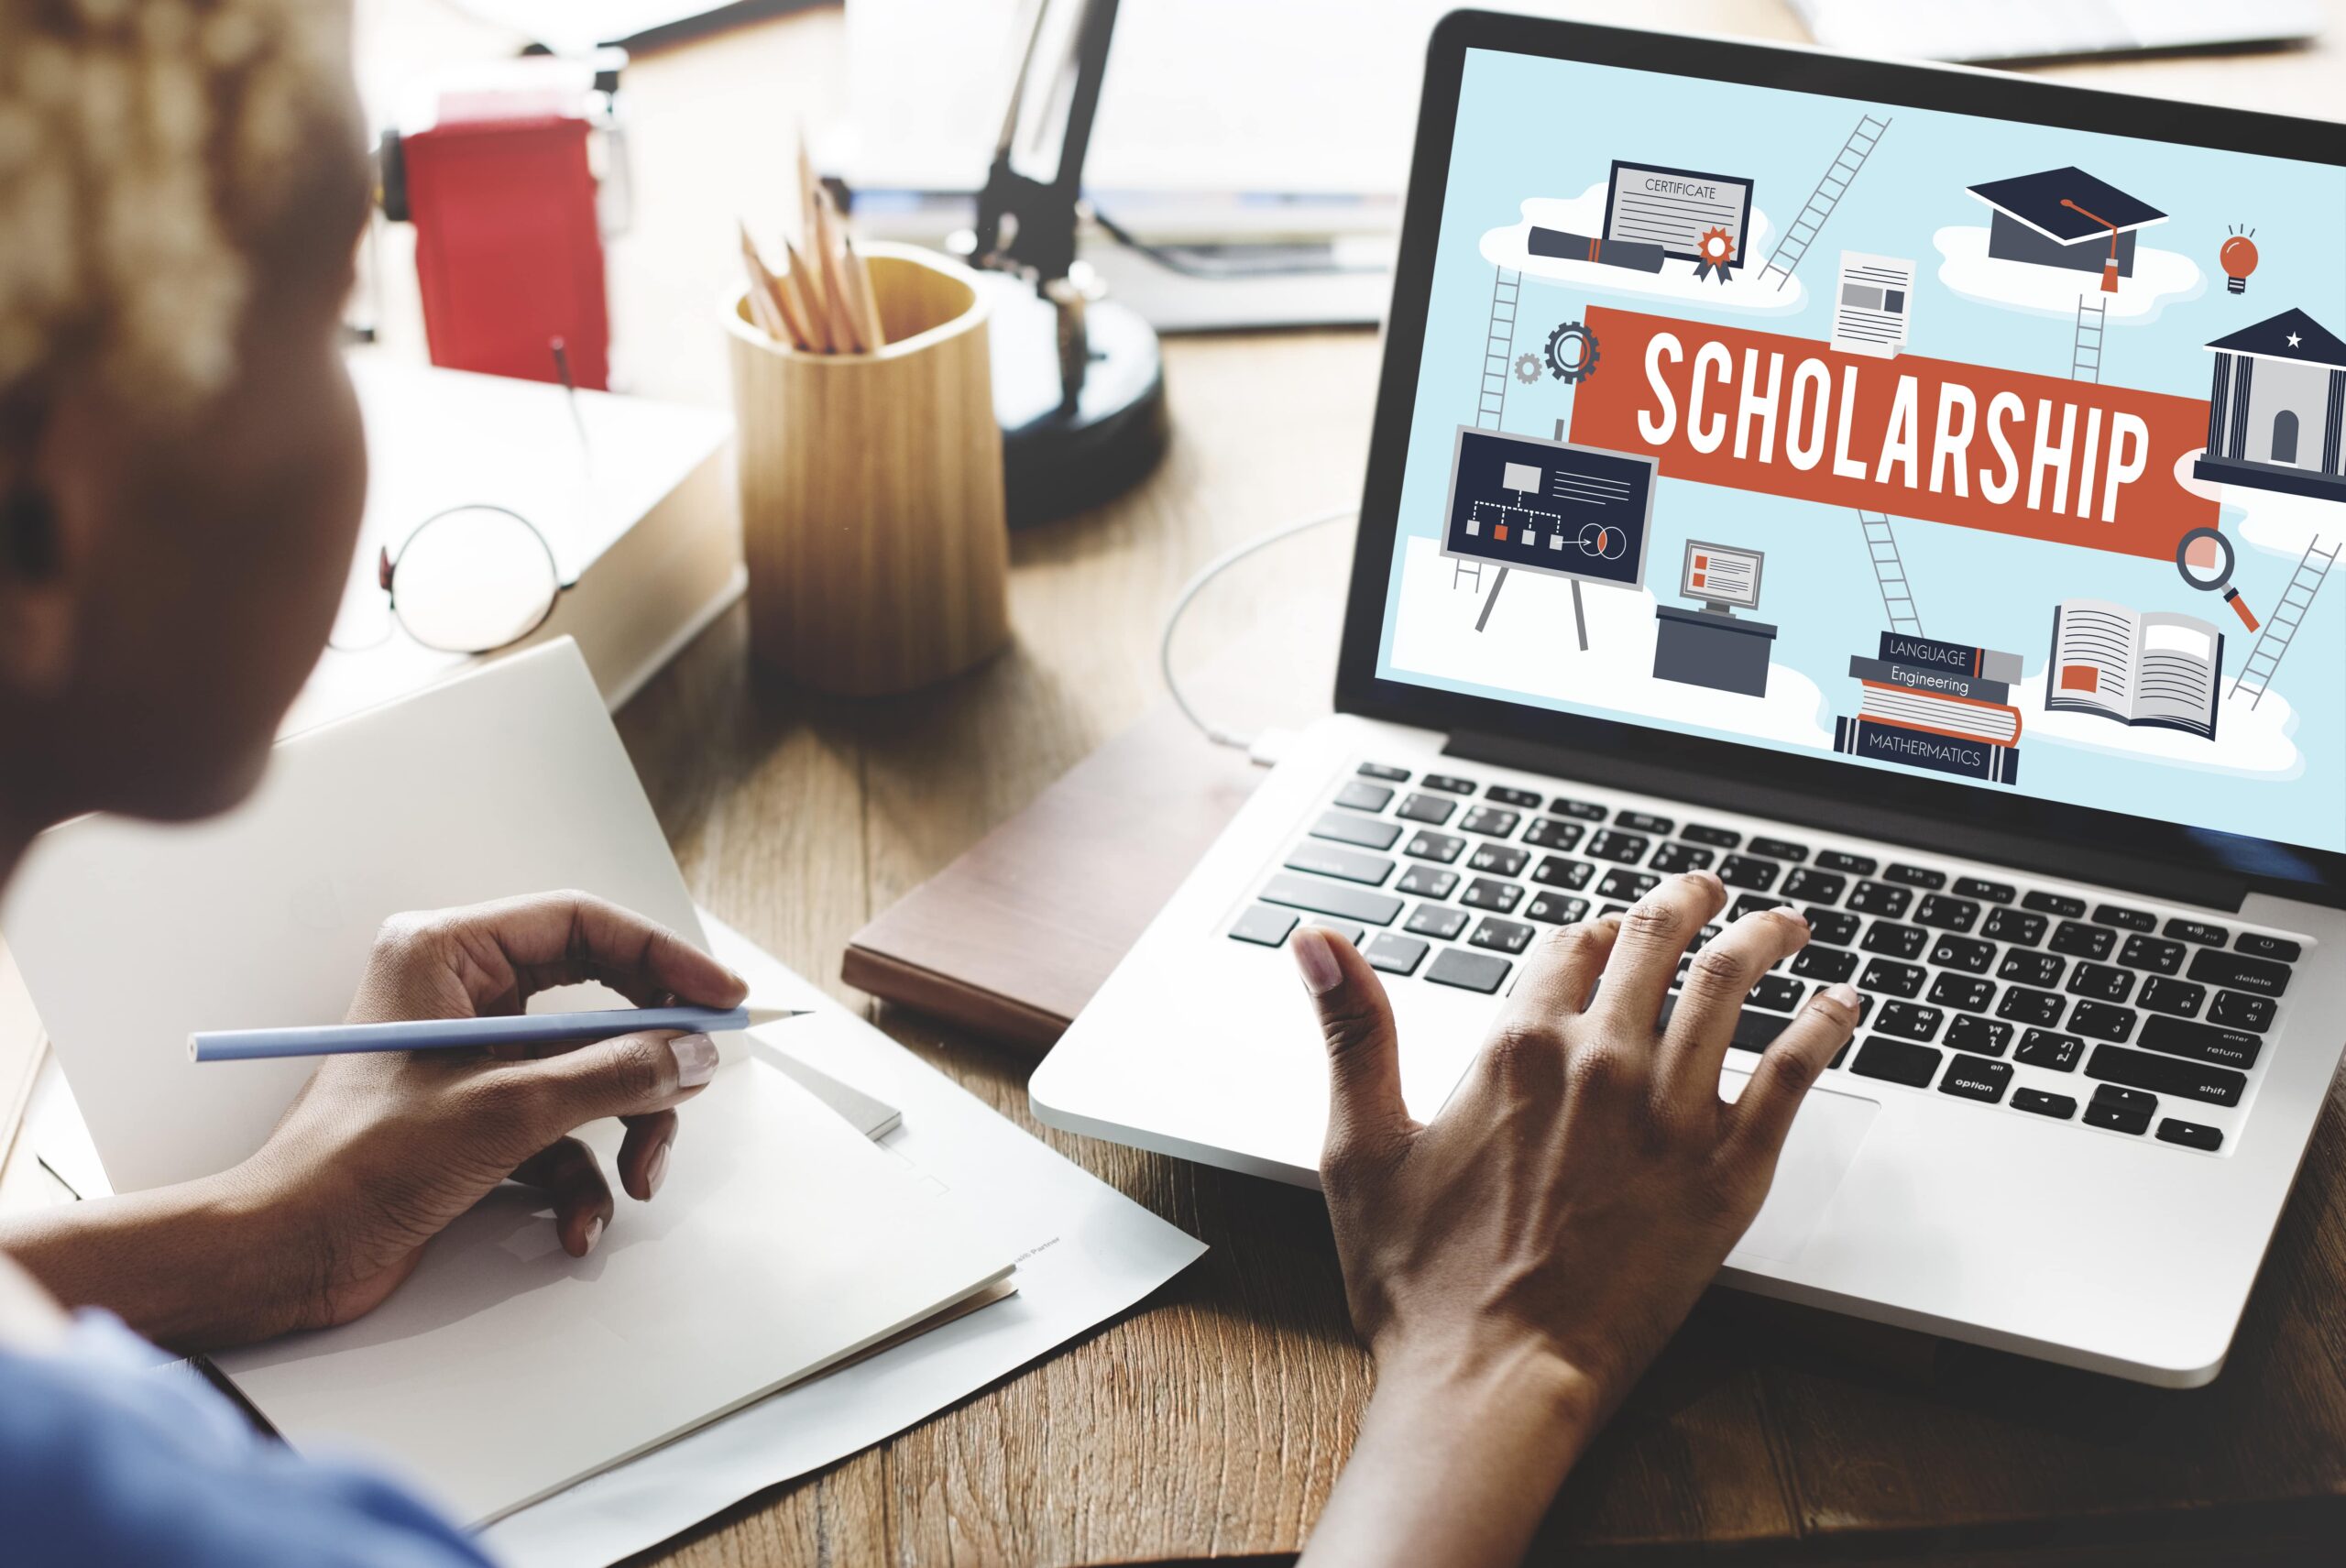 Scholarship on laptop